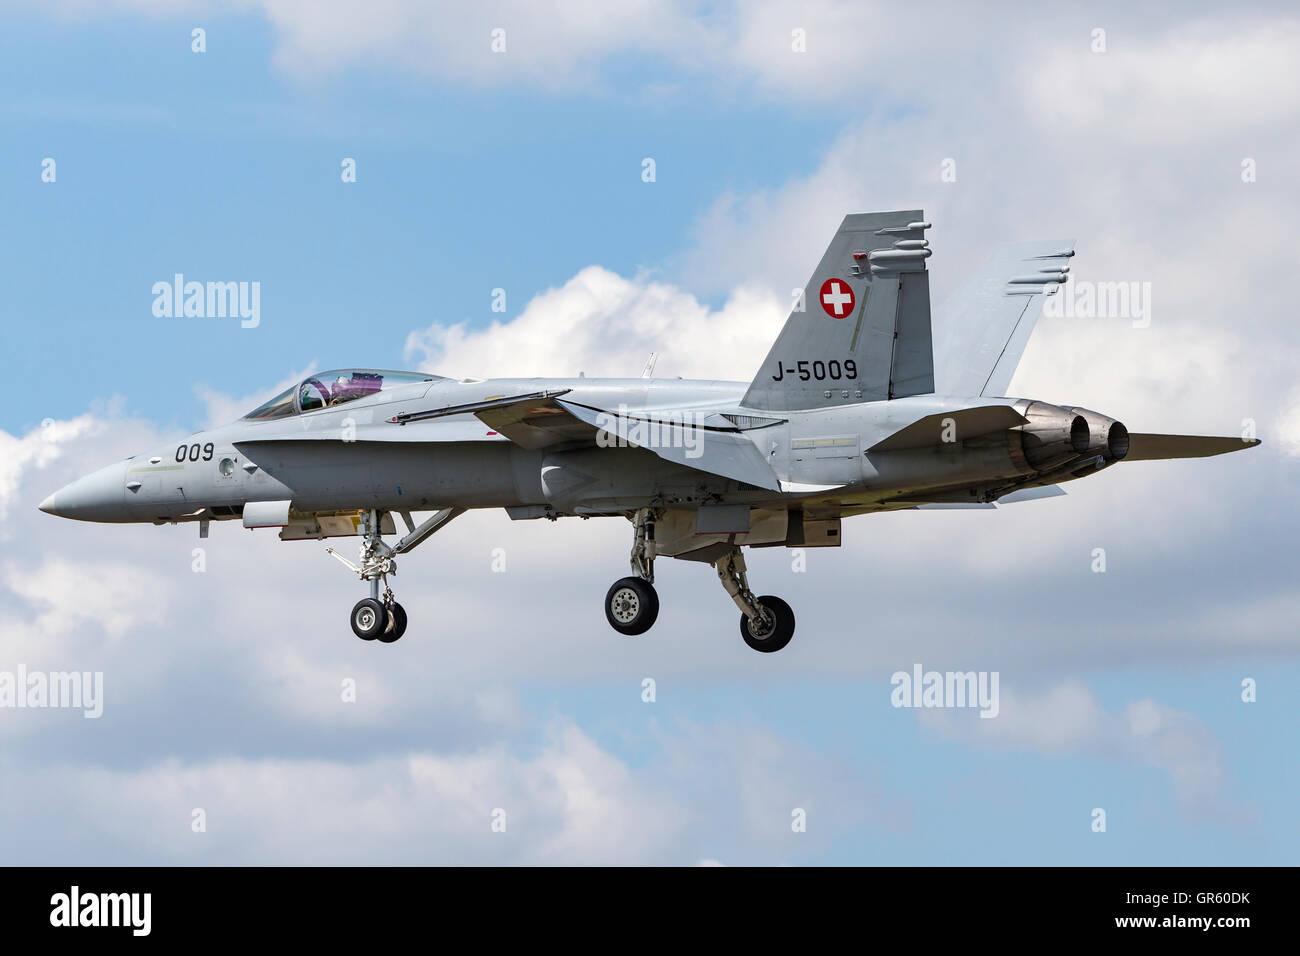 Swiss Air Force (Schweizer Luftwaffe) McDonnell Douglas F/A-18C Fighter aircraft J-5009 Stock Photo